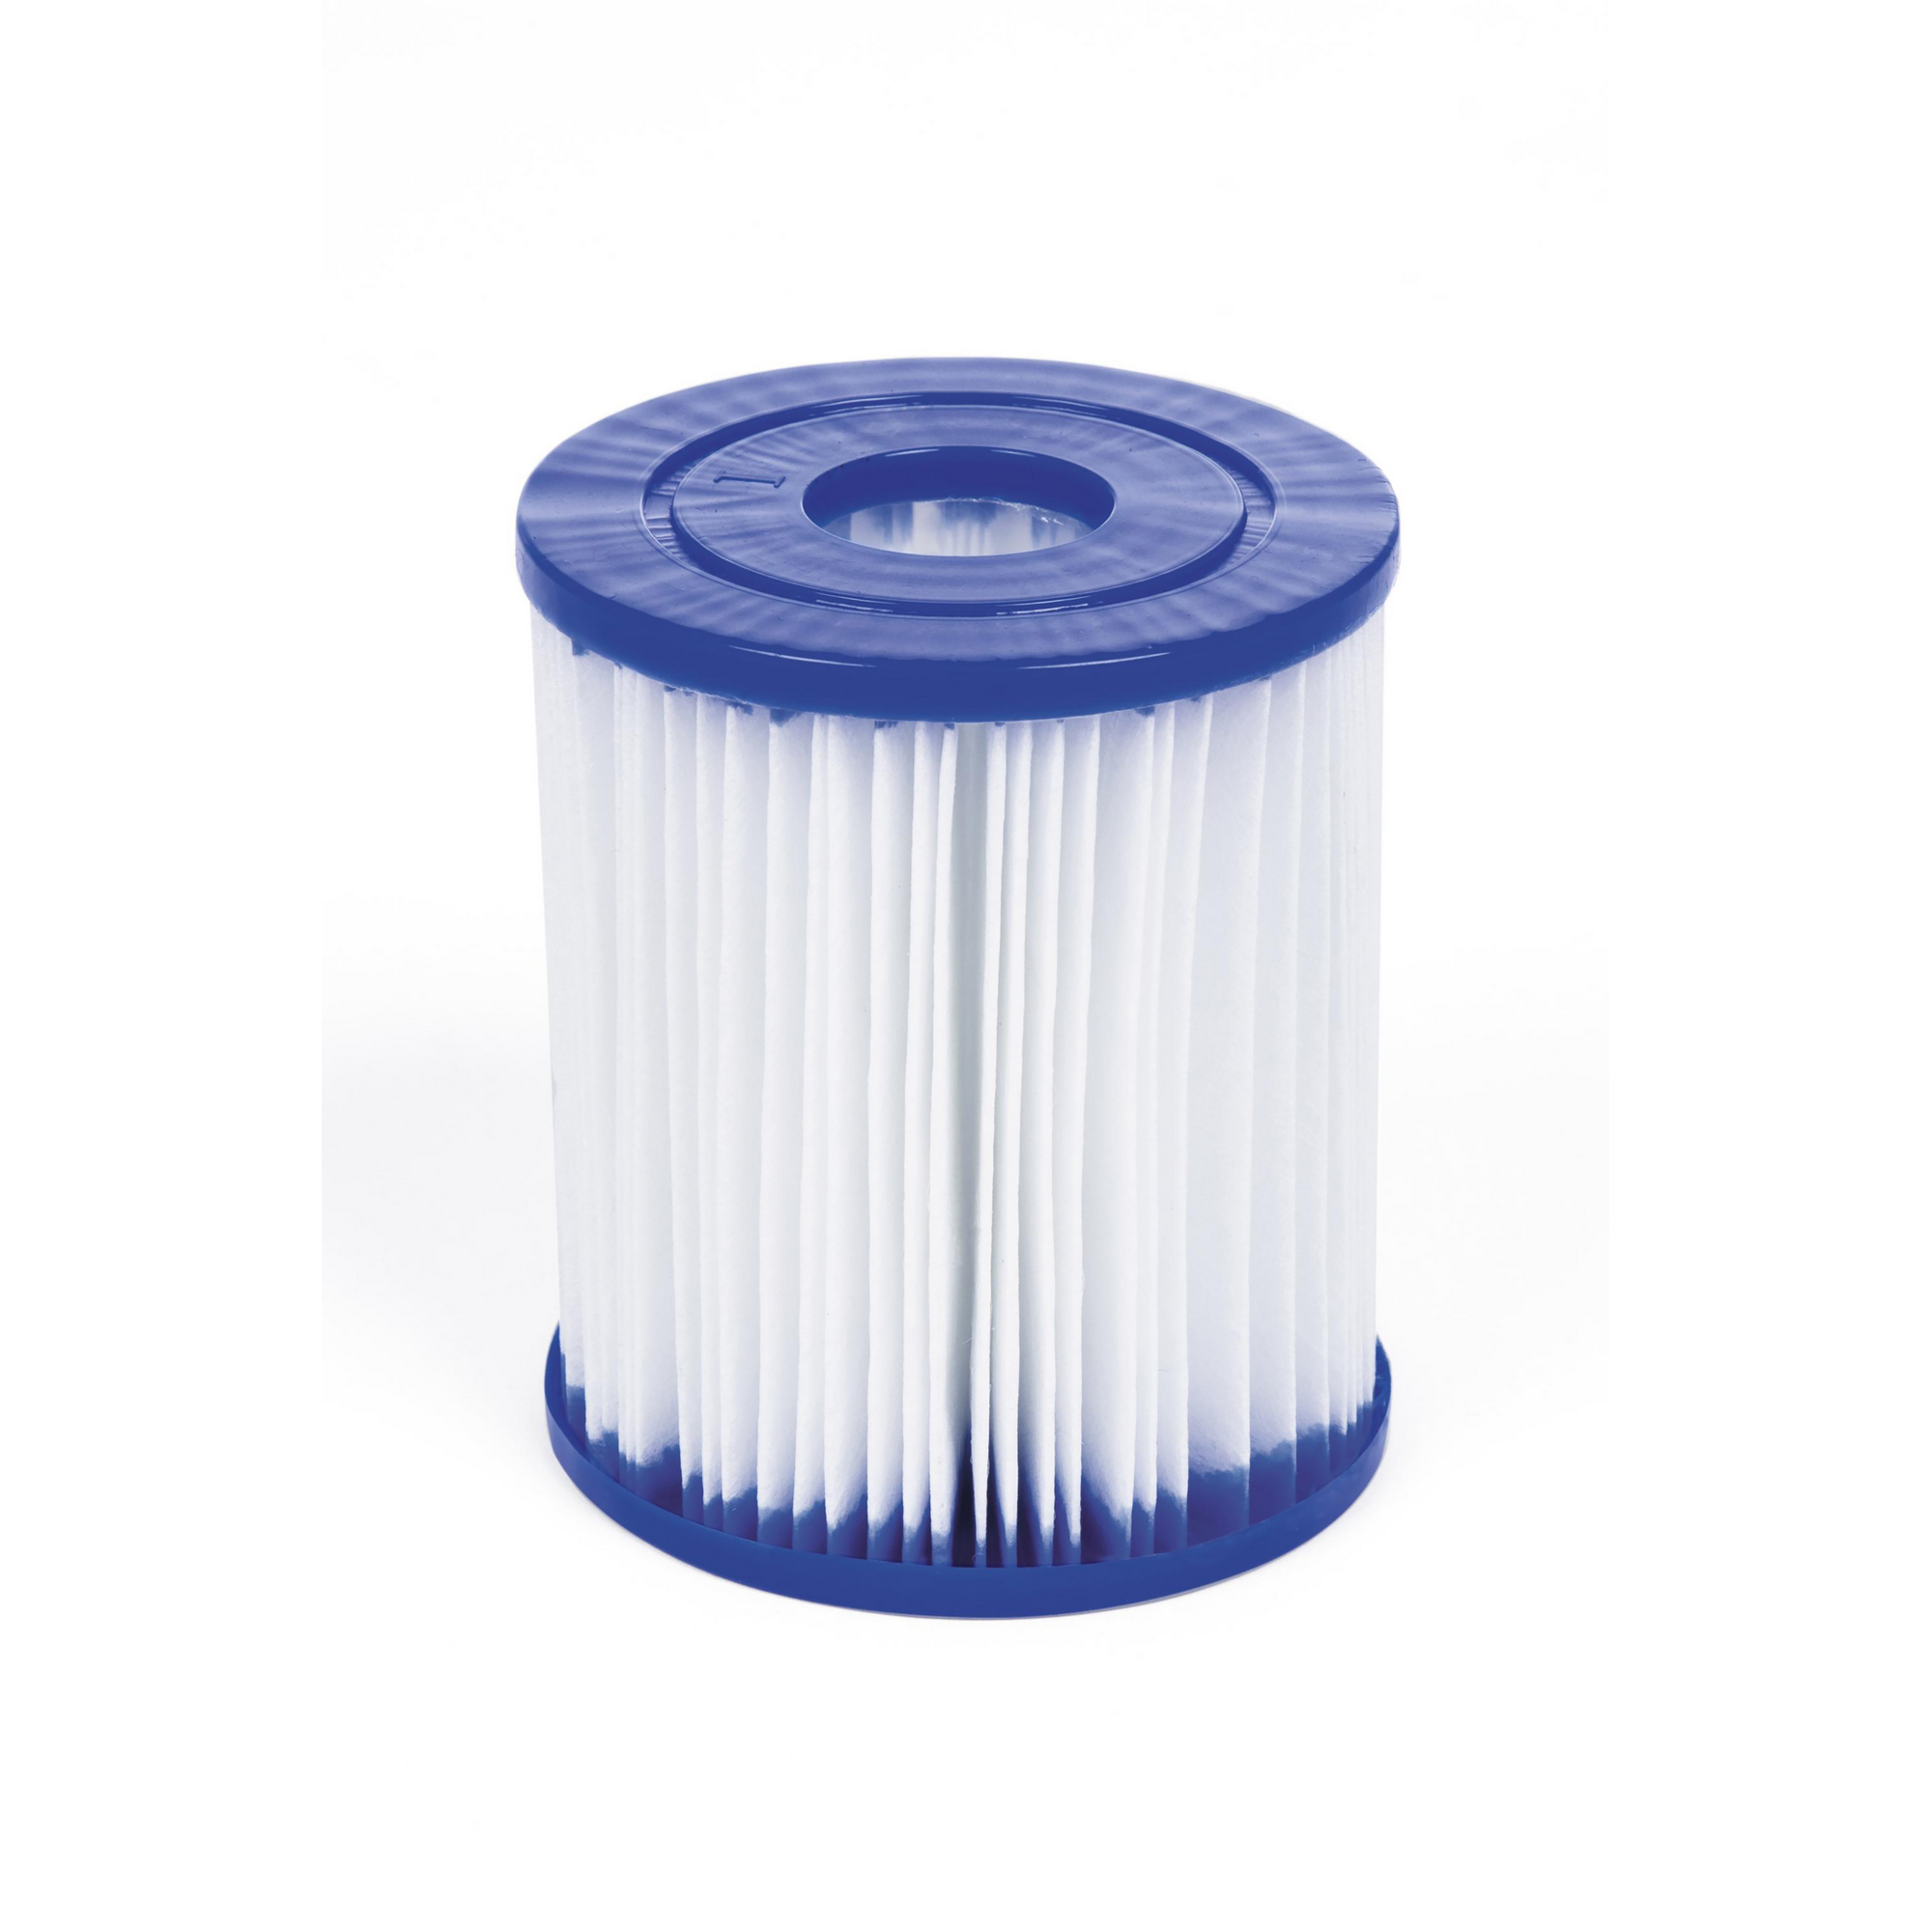 Aufstellpool 'Fast Set™' blau/weiß rund Ø 366 x 76 cm + product picture